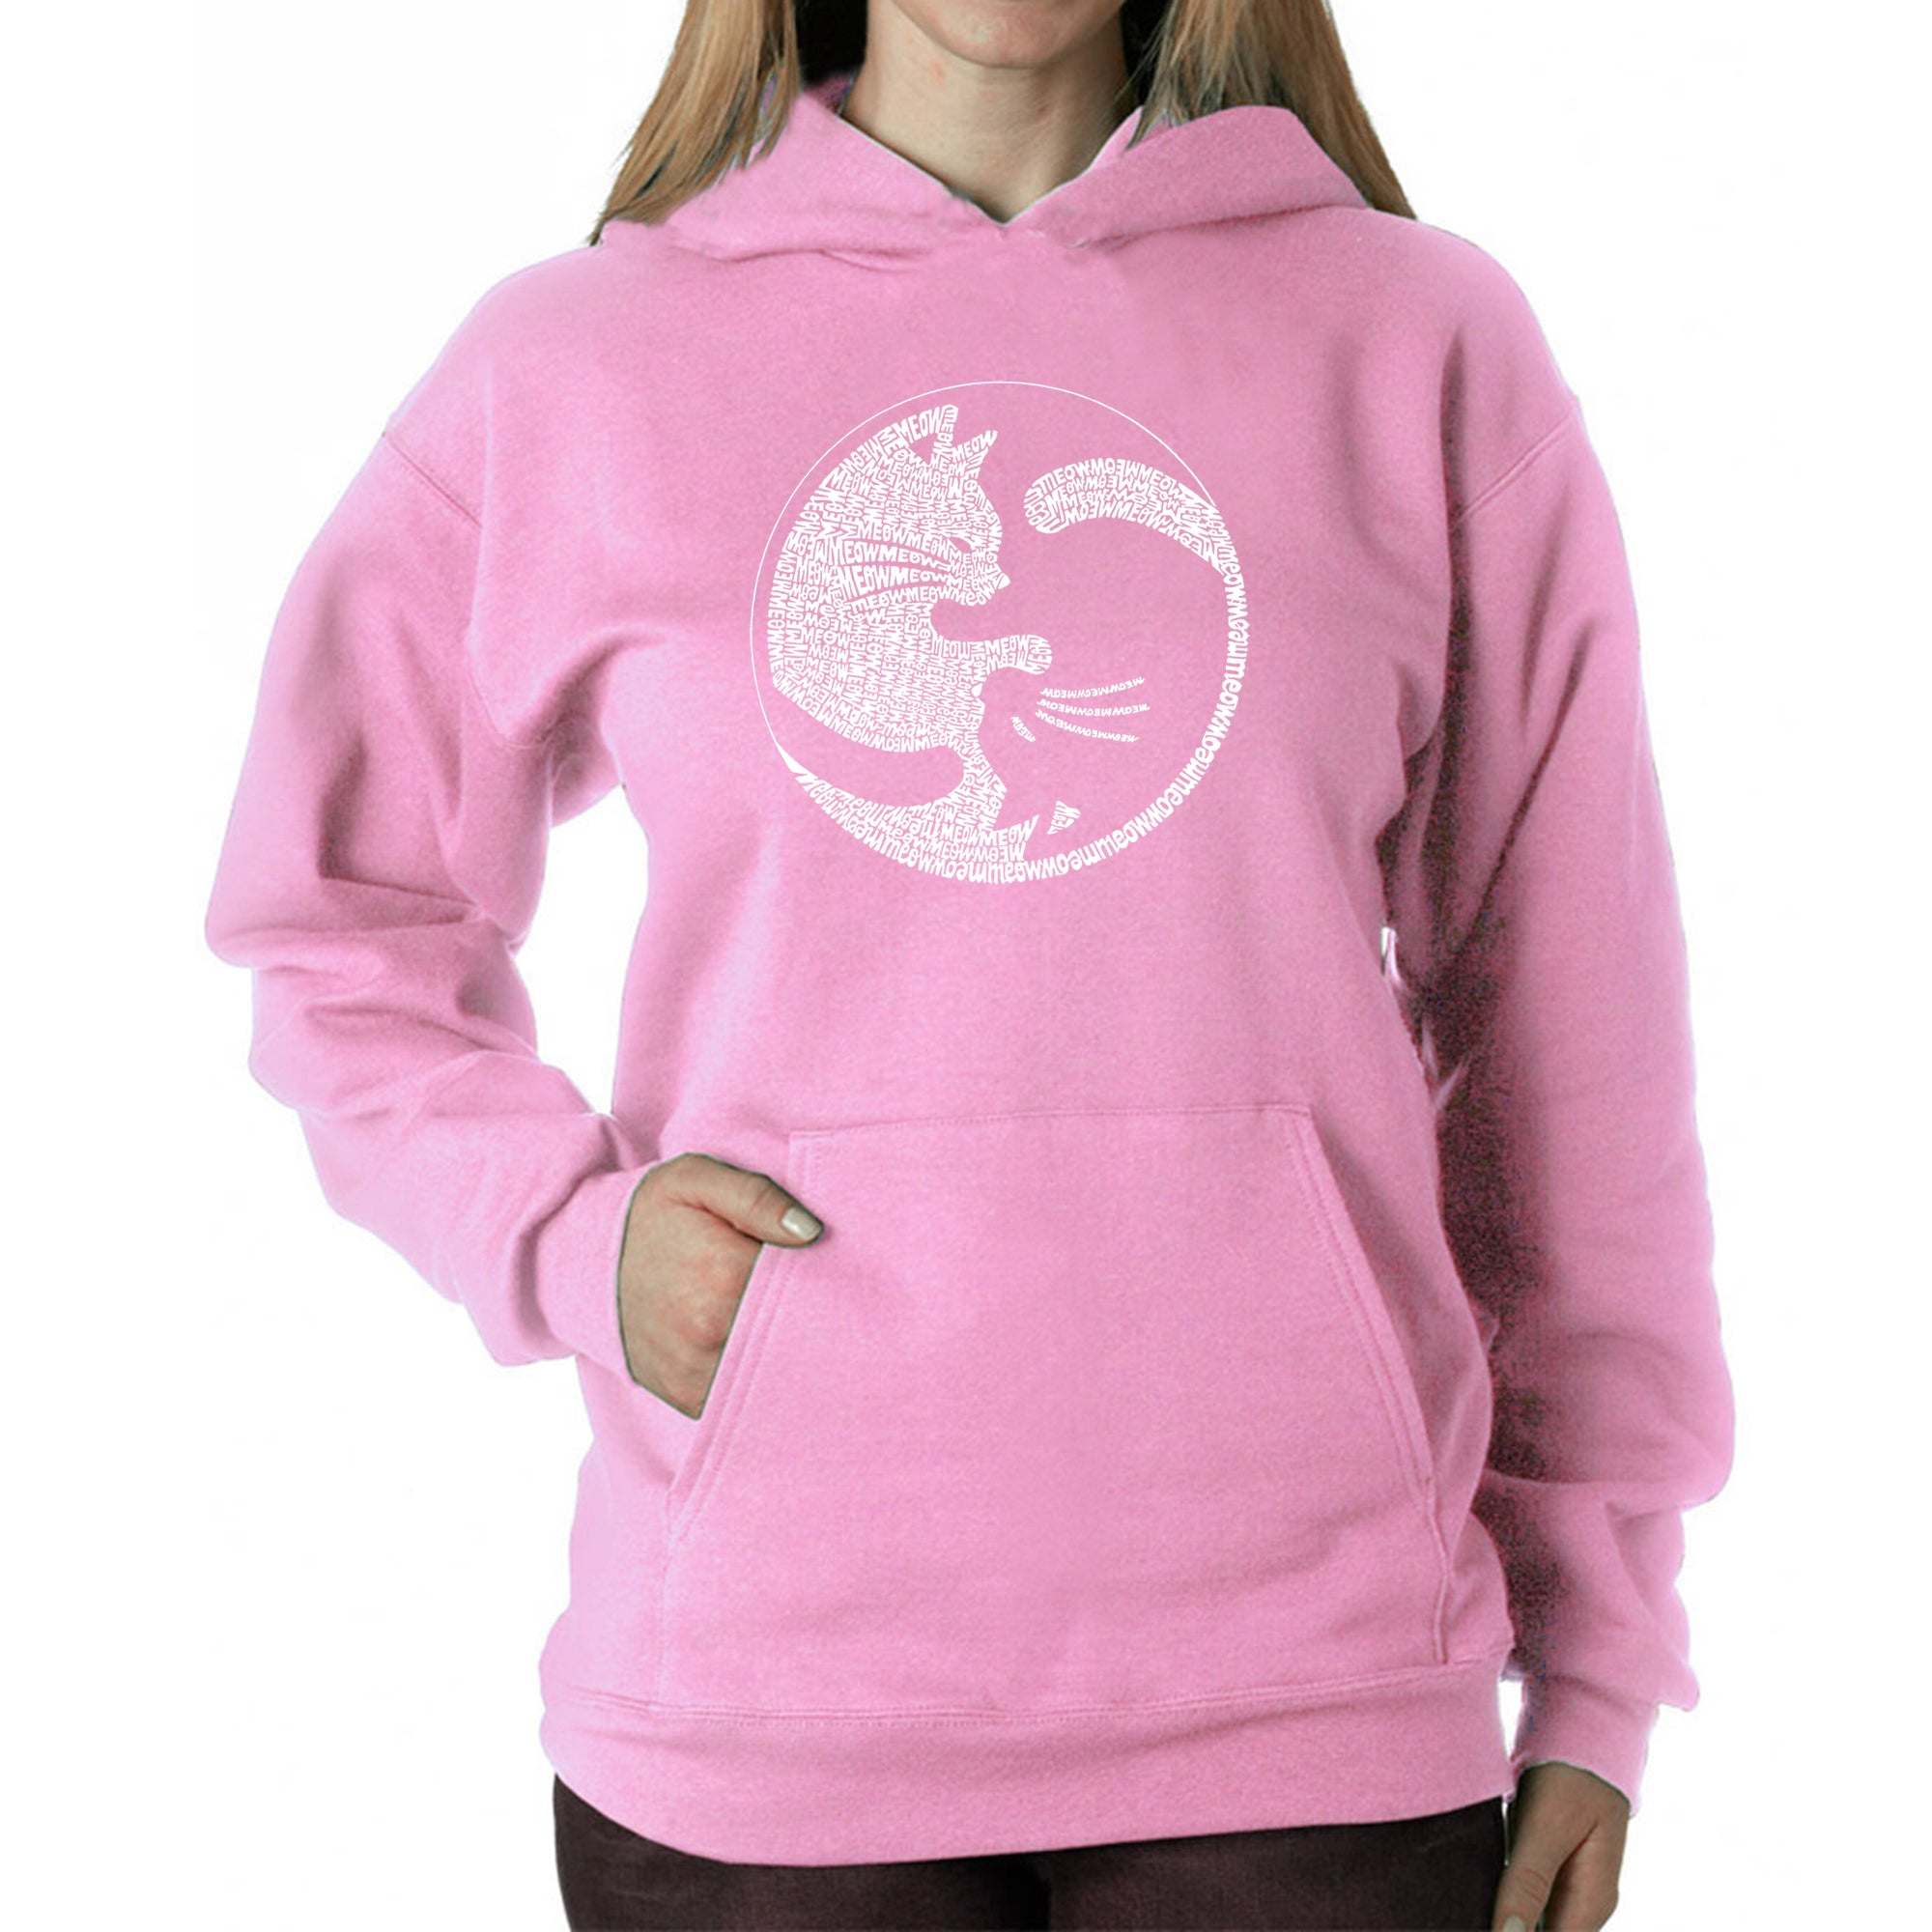 Yin Yang Cat - Women's Word Art Hooded Sweatshirt - Pink - X-Large